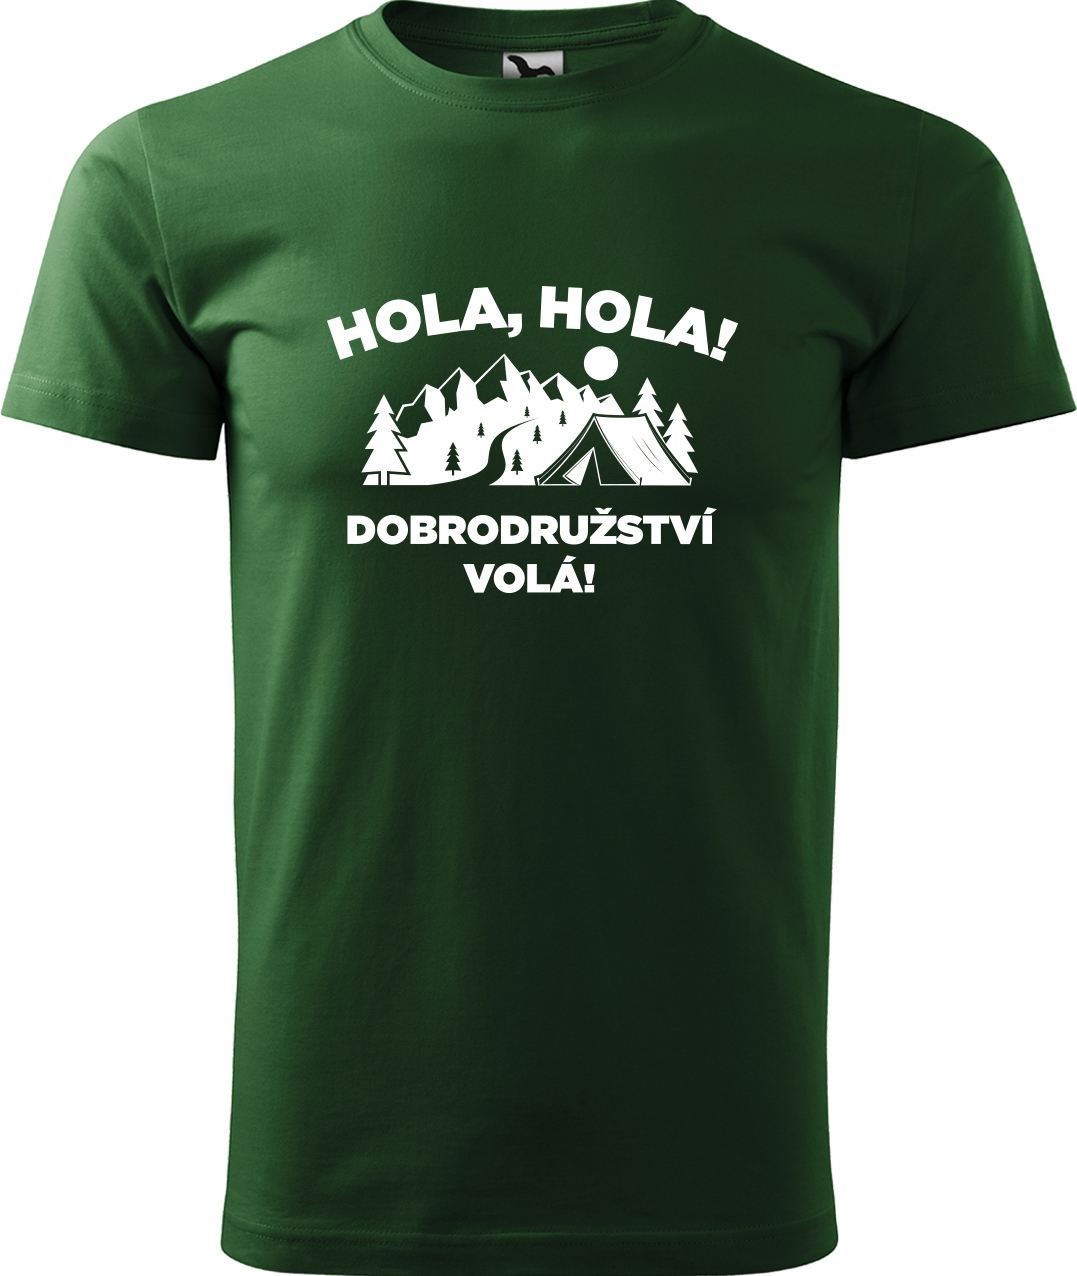 Pánské cestovatelské tričko - Hola hola! Dobrodružství volá! Velikost: XL, Barva: Lahvově zelená (06), Střih: pánský